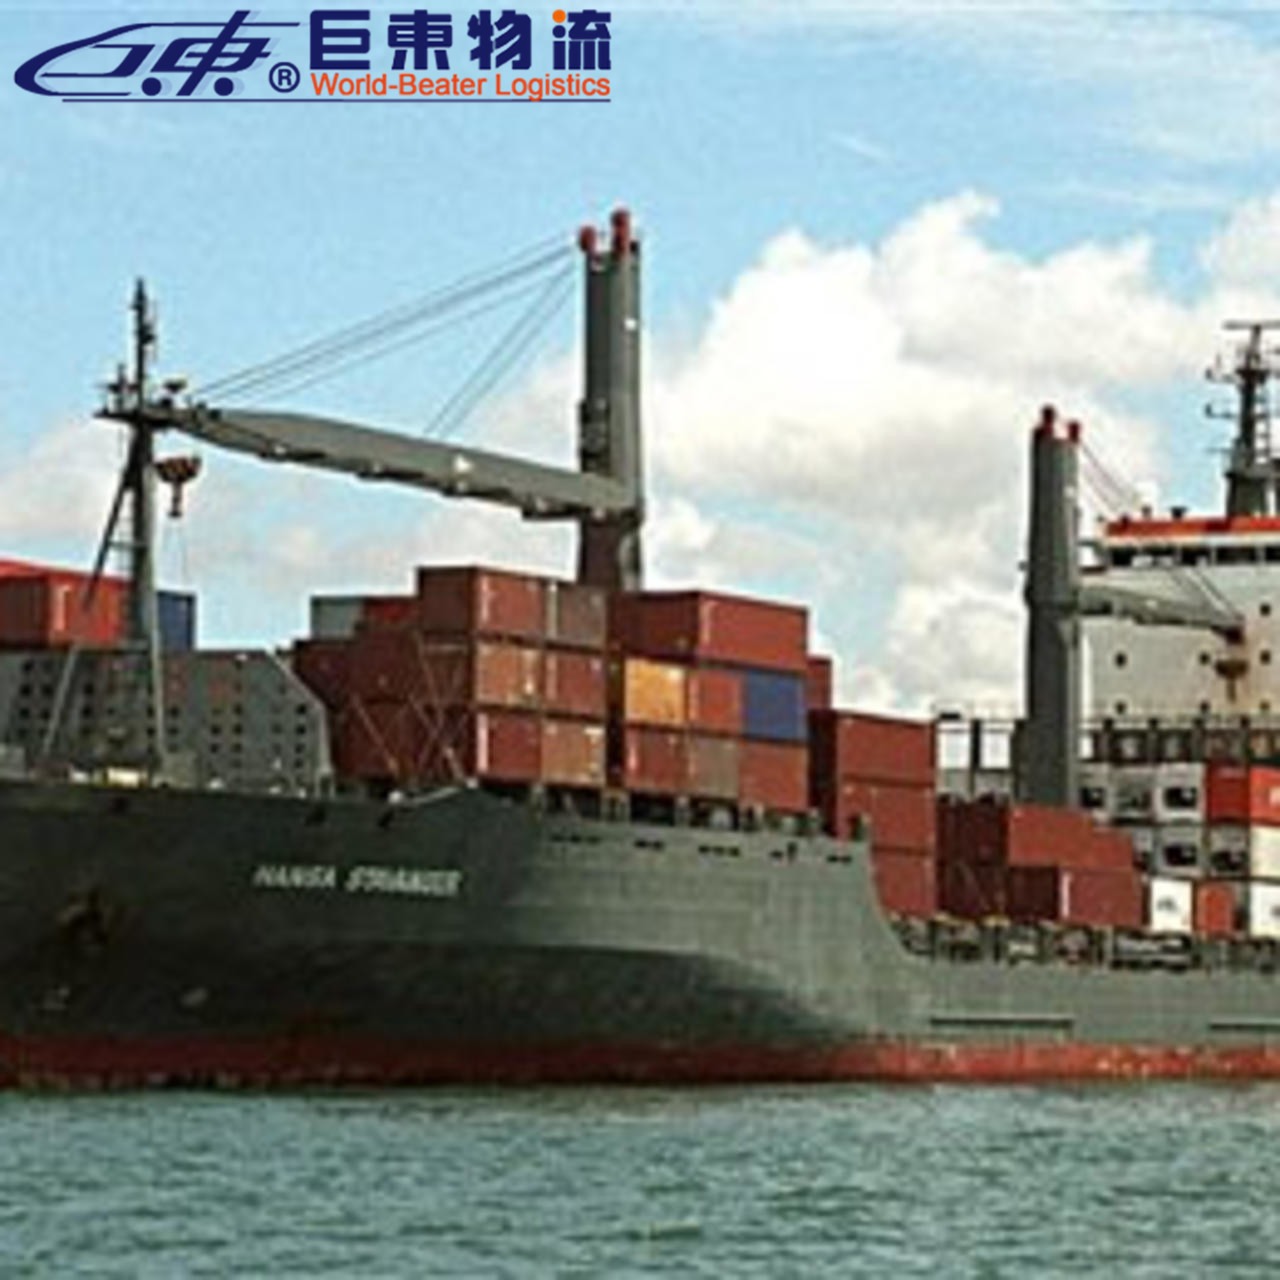 苏州到美国物流海运  海运物流服务企业  巨东物流13年海运服务专业可靠